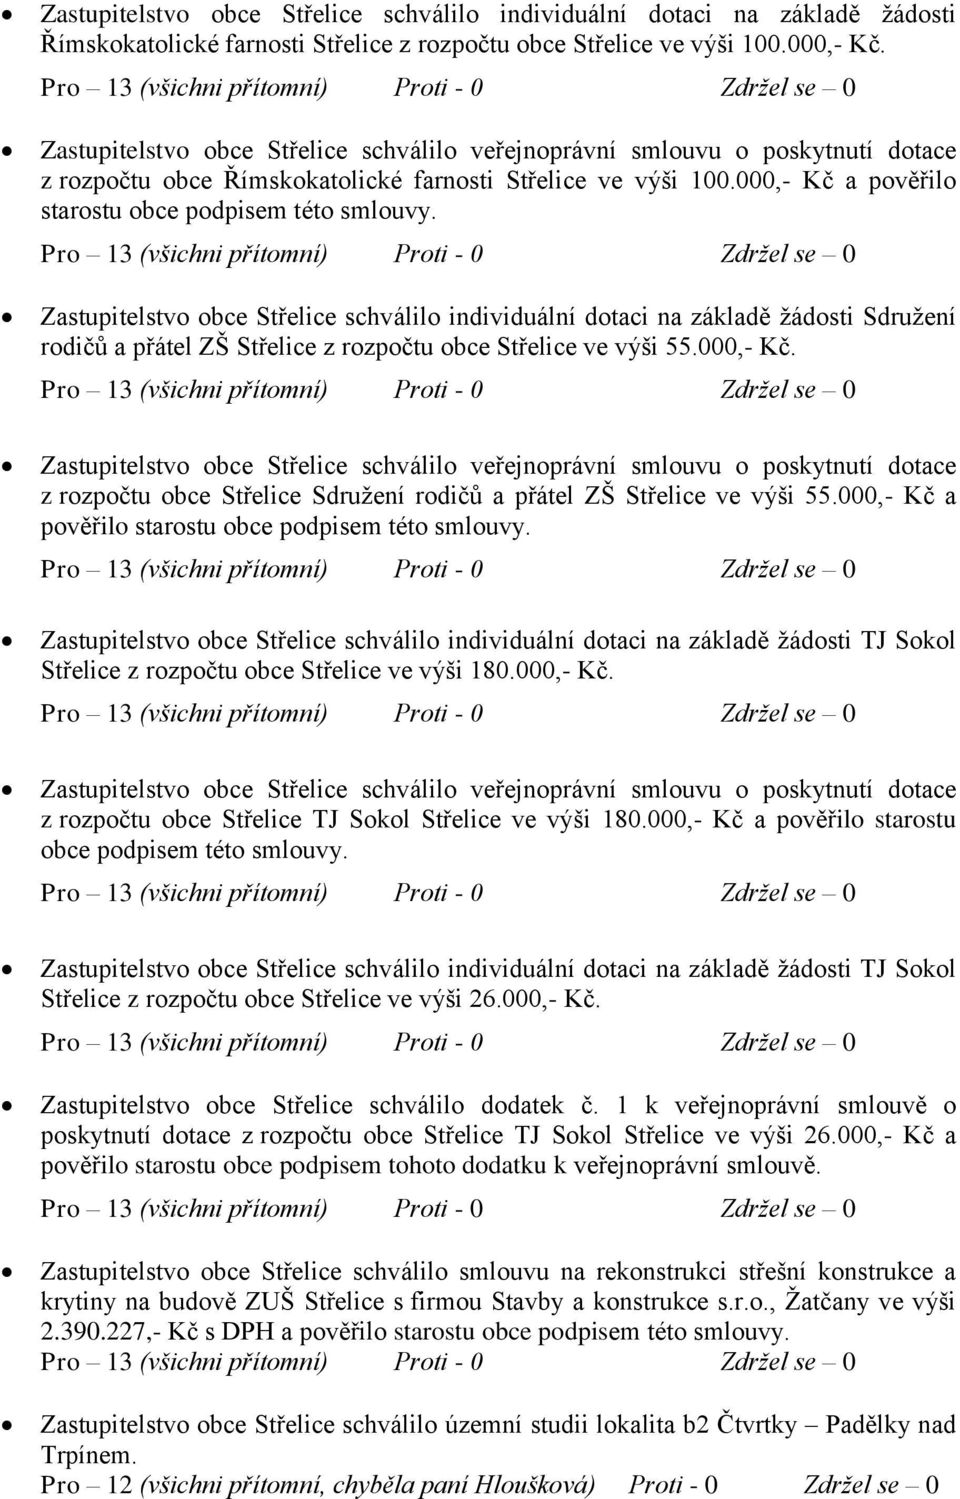 Zastupitelstvo obce Střelice schválilo individuální dotaci na základě žádosti Sdružení rodičů a přátel ZŠ Střelice z rozpočtu obce Střelice ve výši 55.000,- Kč.